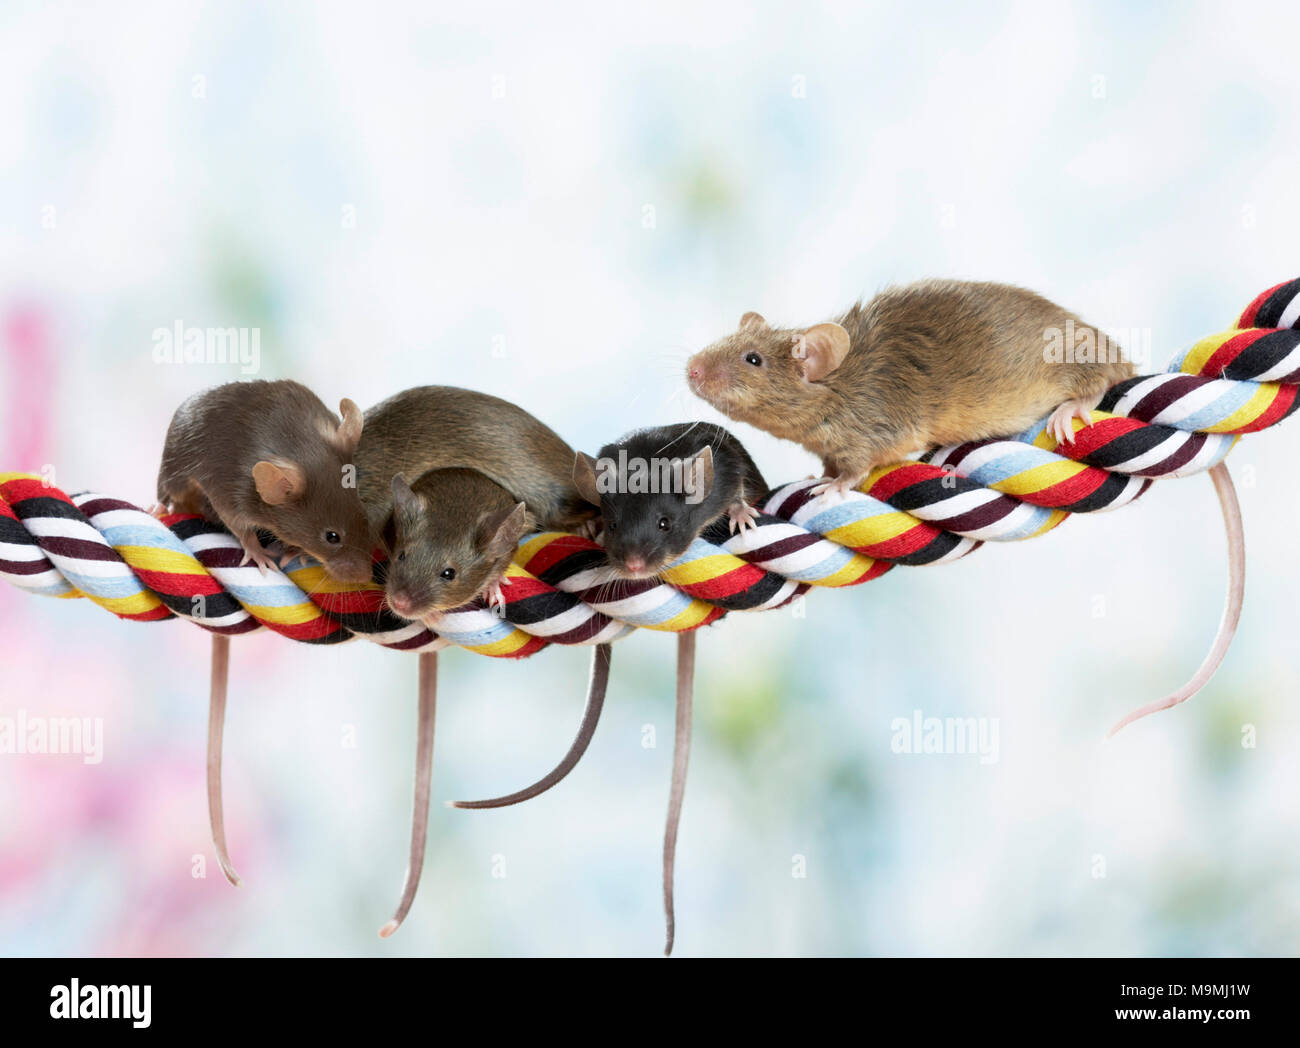 Elegante ratón. Cuatro ratones en coloridos de la cuerda. Alemania Foto de stock